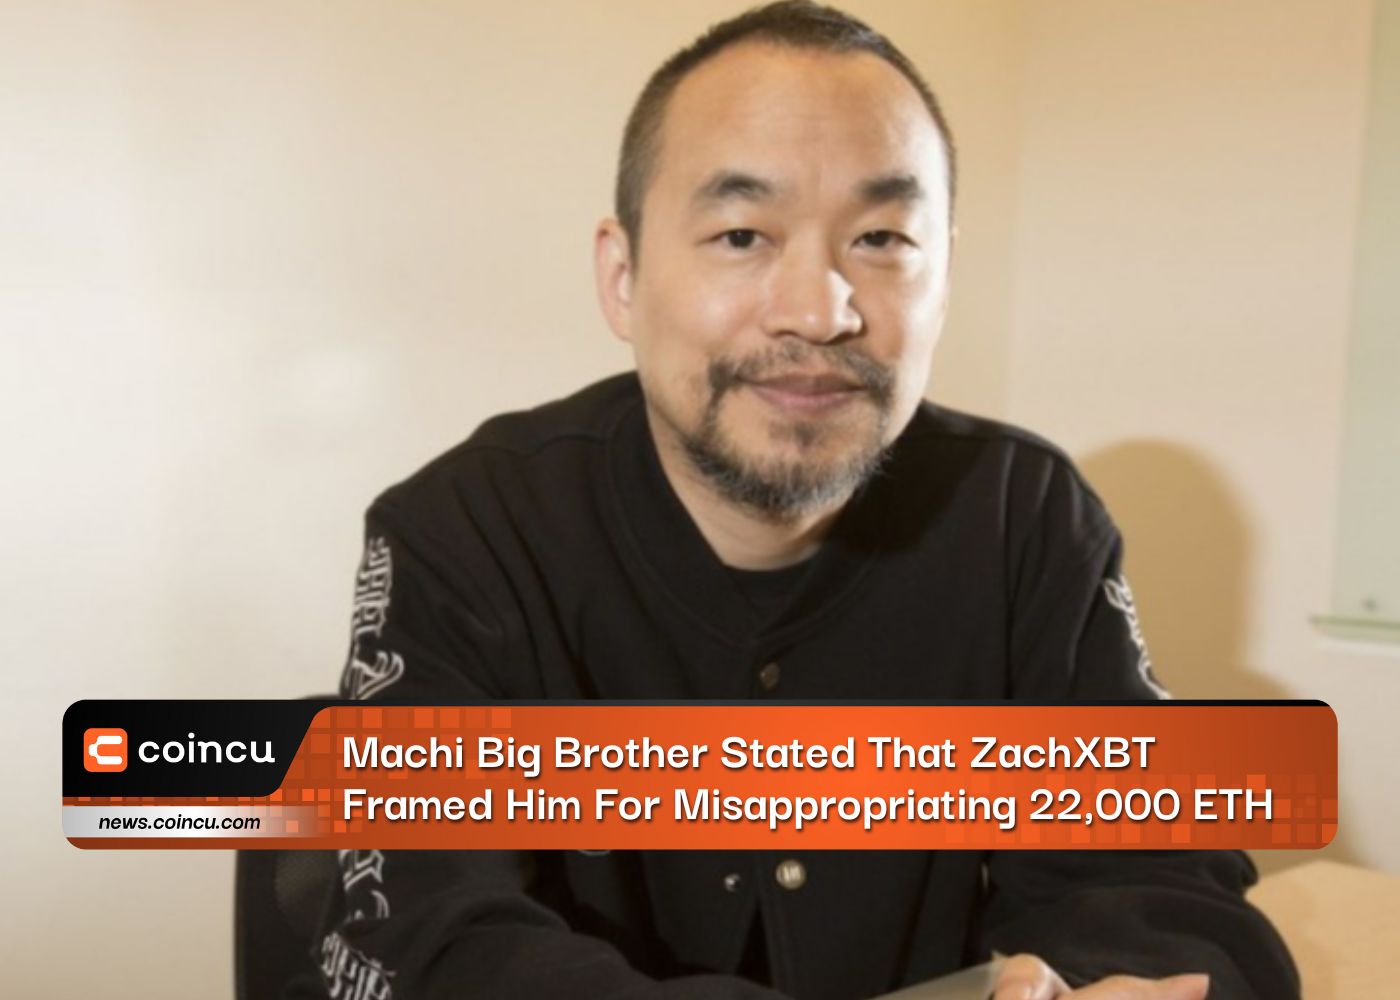 Machi Big Brother gab an, dass ZachXBT ihm die Unterschlagung von 22,000 ETH angehängt habe